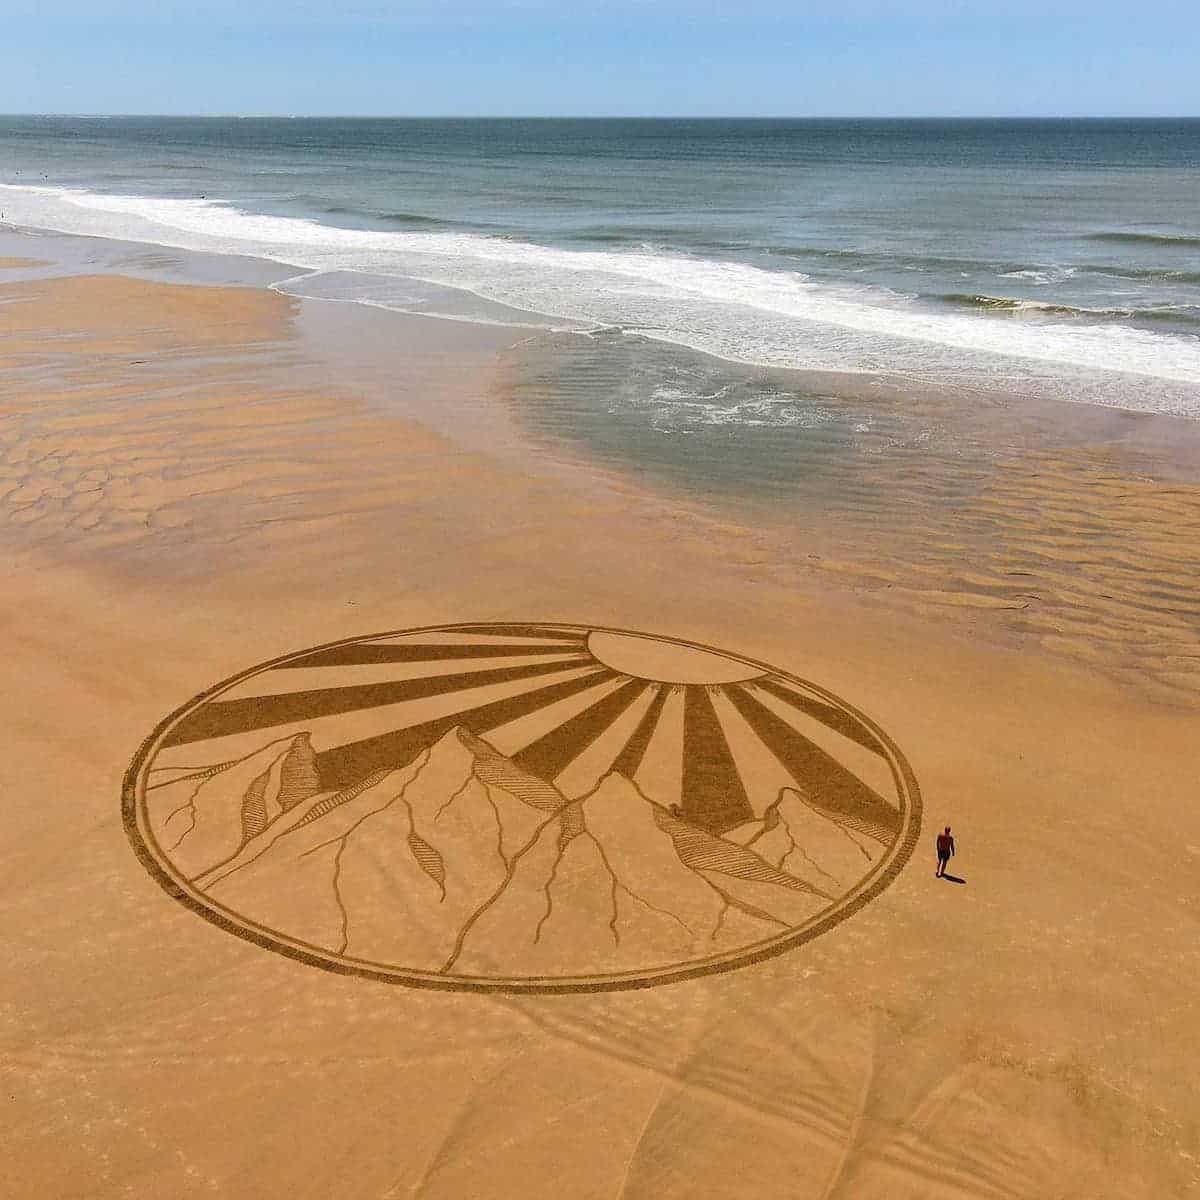 Beach Art by JBen